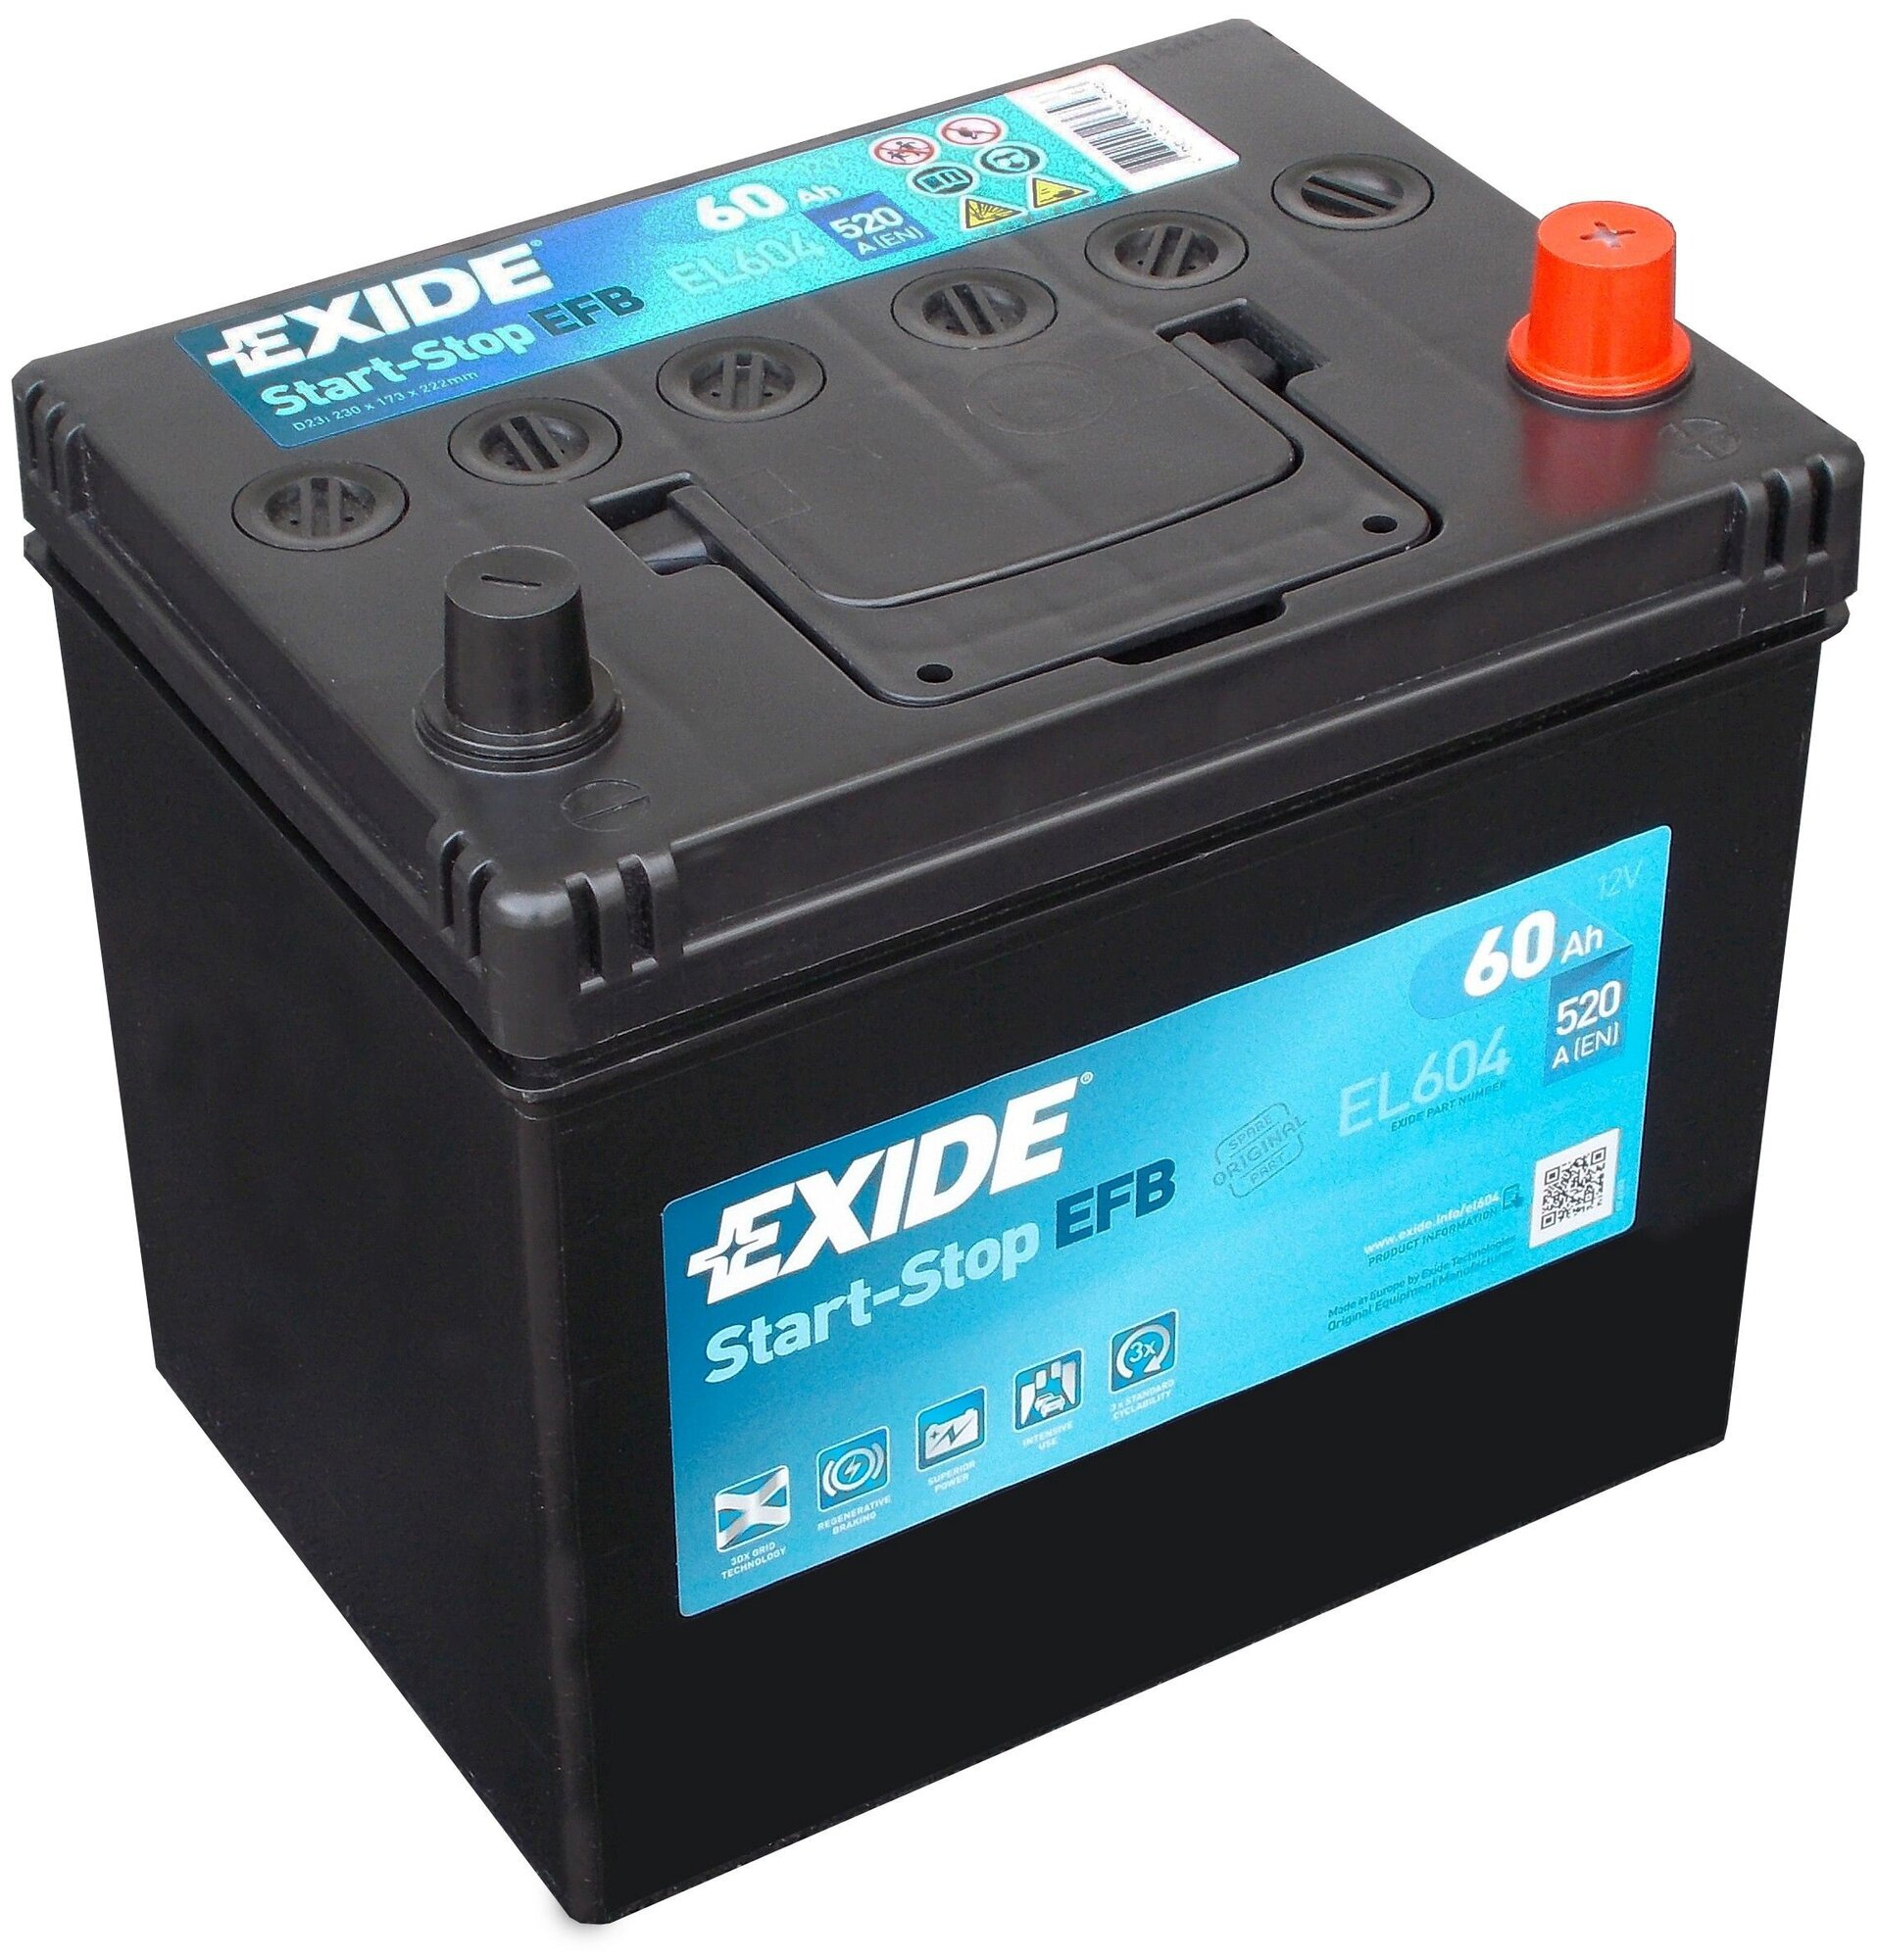 Автомобильный аккумулятор Exide Start-Stop EFB EL604